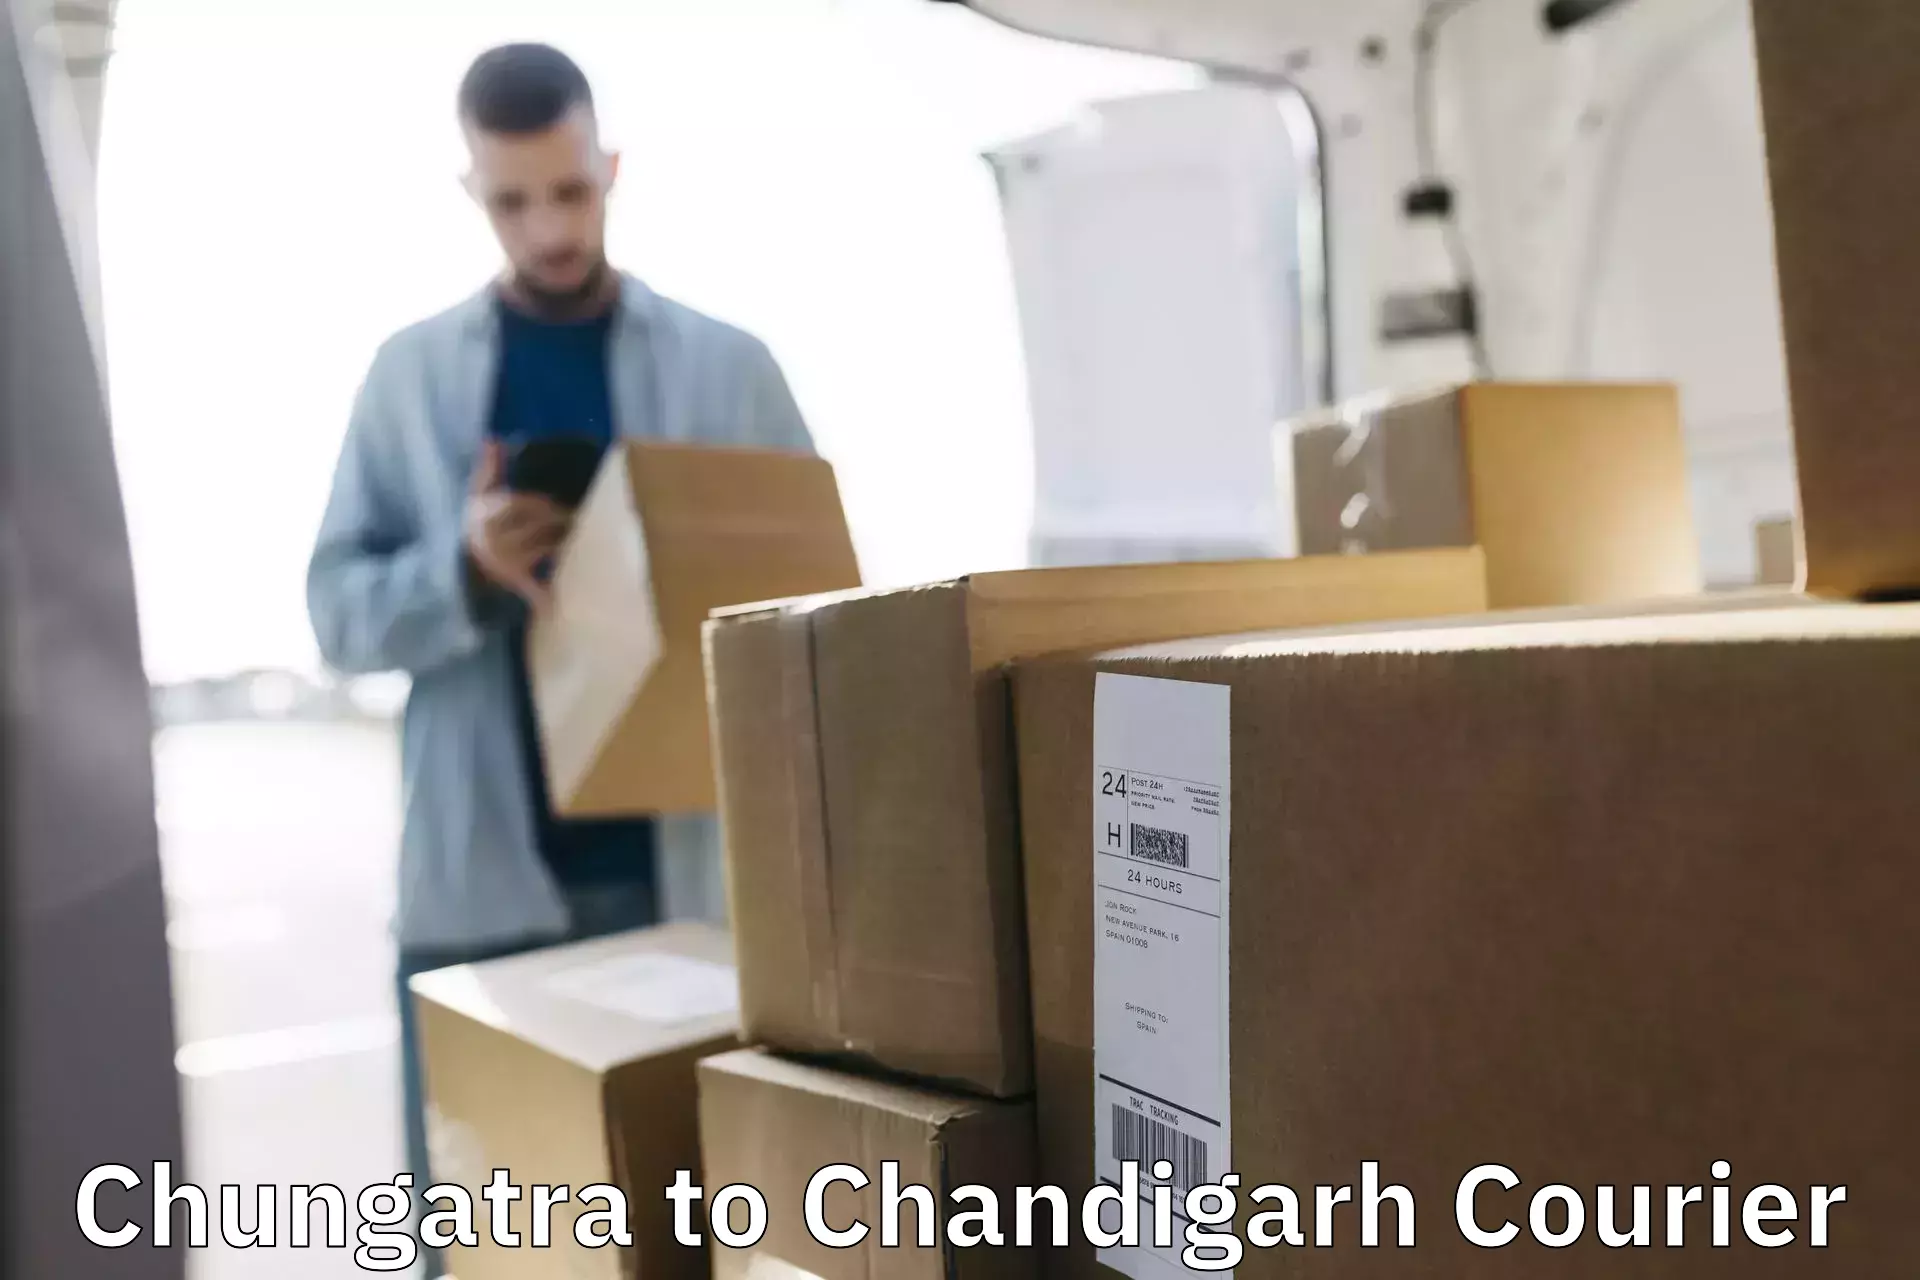 Smart shipping technology Chungatra to Chandigarh